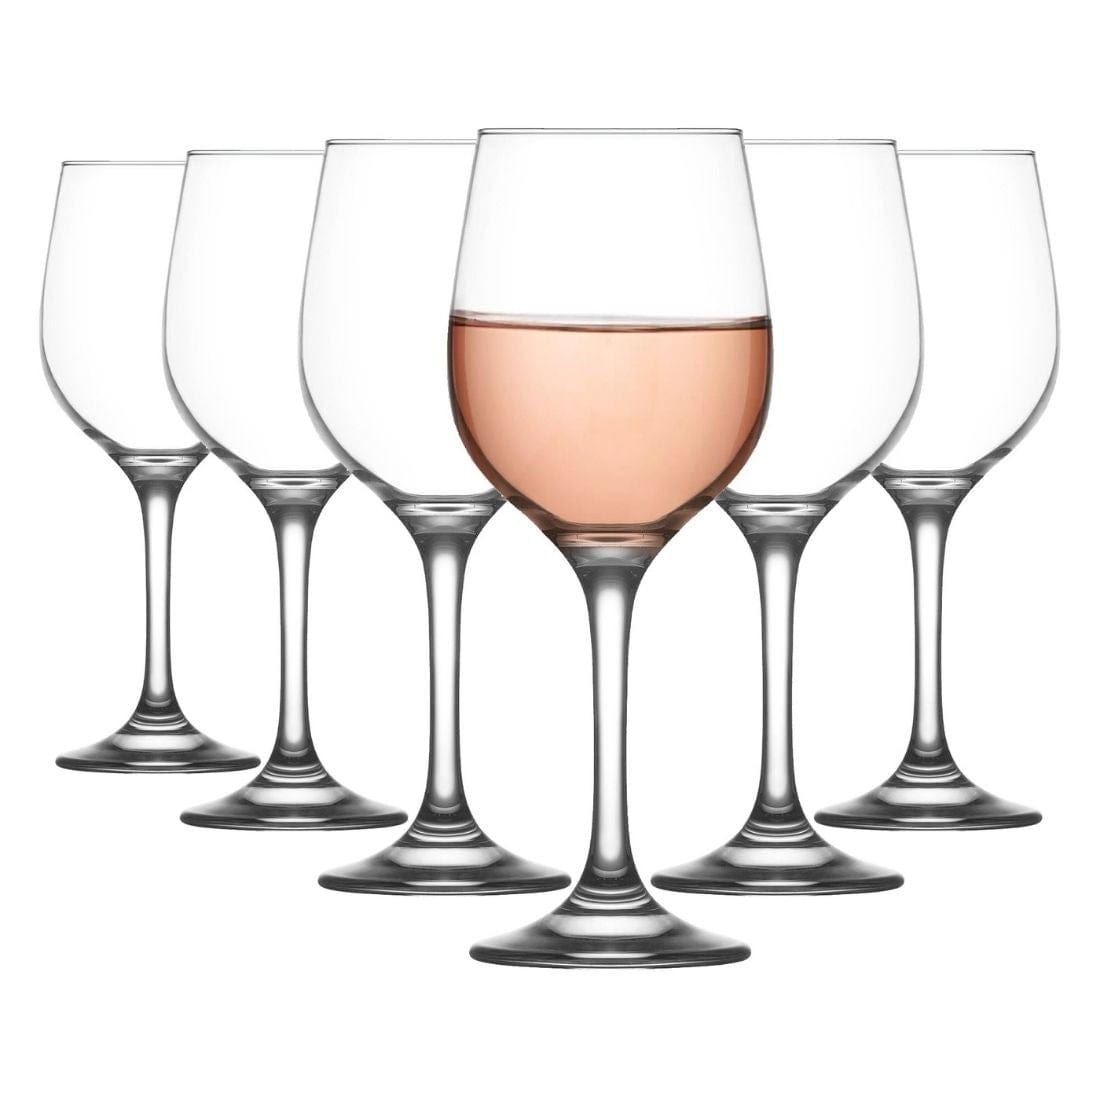 LAV Fame Red Wine Glasses (395 ml) - Set of 6